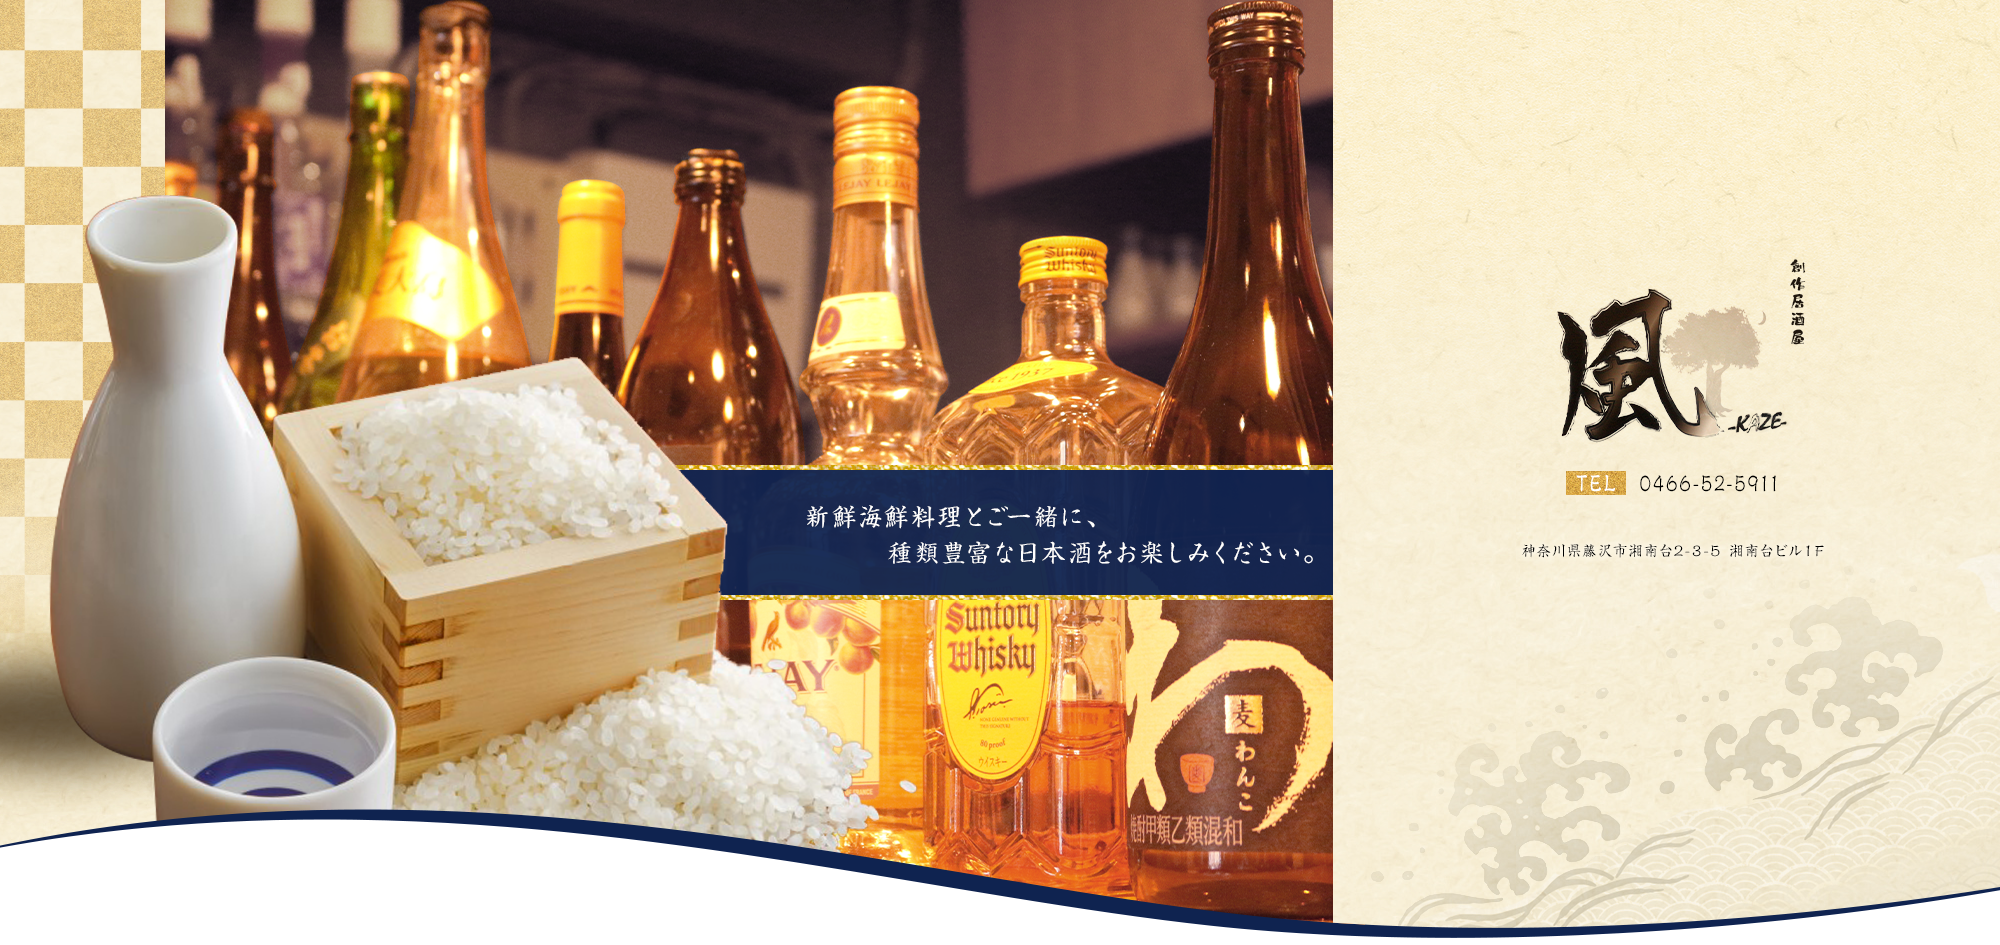 新鮮海鮮料理とご一緒に、種類豊富な日本酒をお楽しみください。